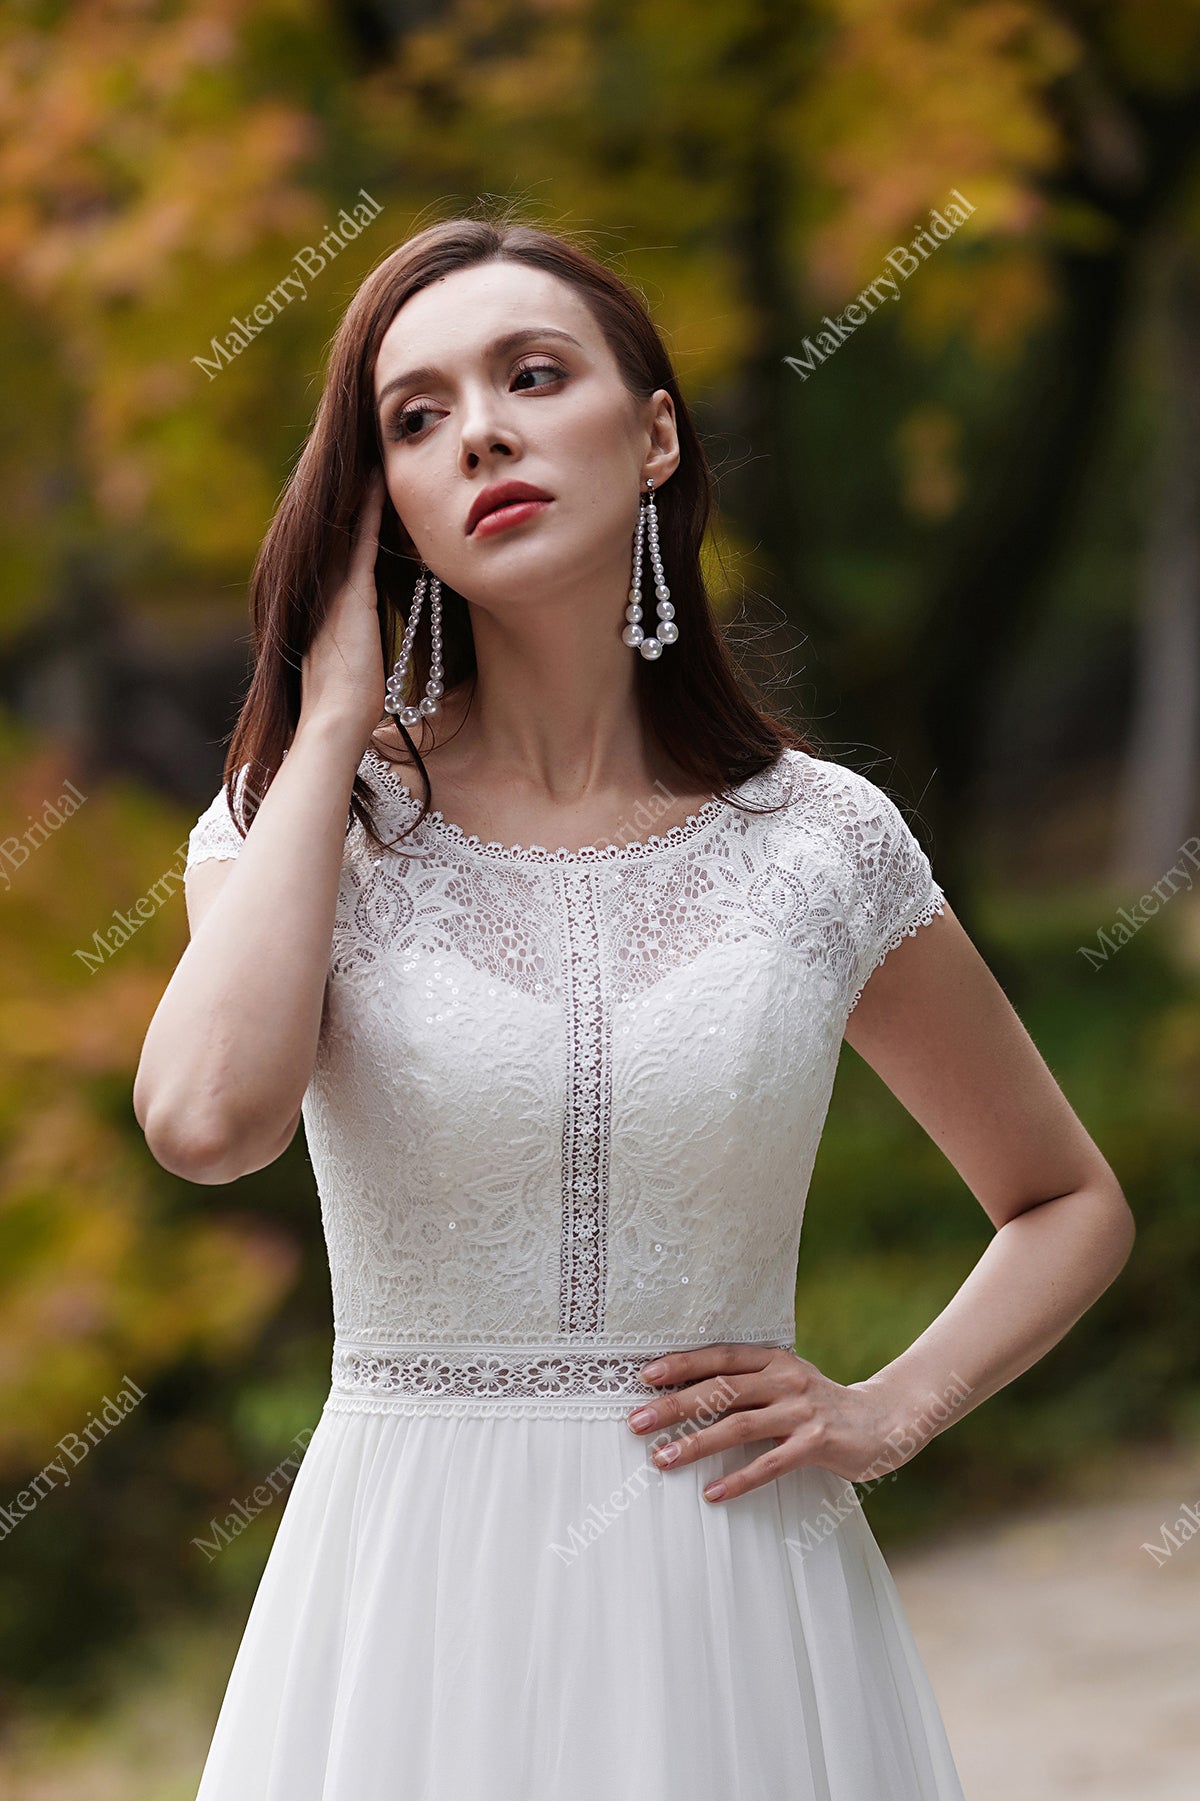 vintage wedding dresses with cap sleeves